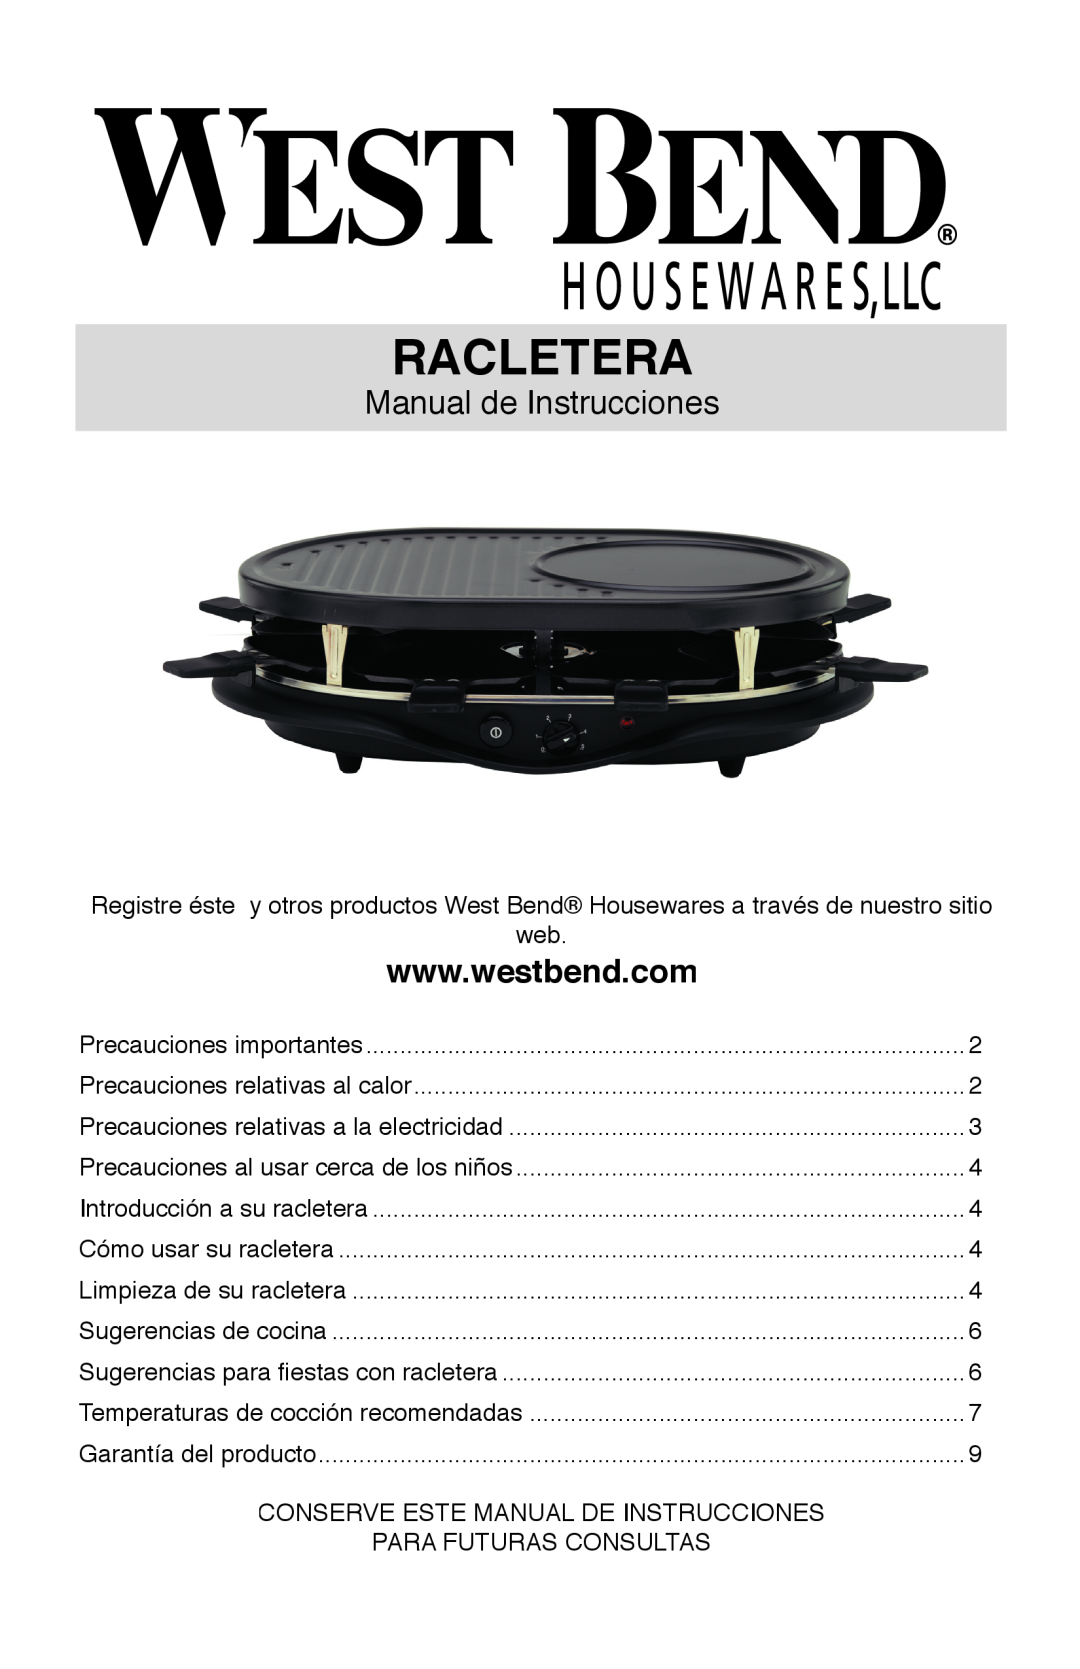 West Bend Model 6130 instruction manual Racletera, Manual de Instrucciones 